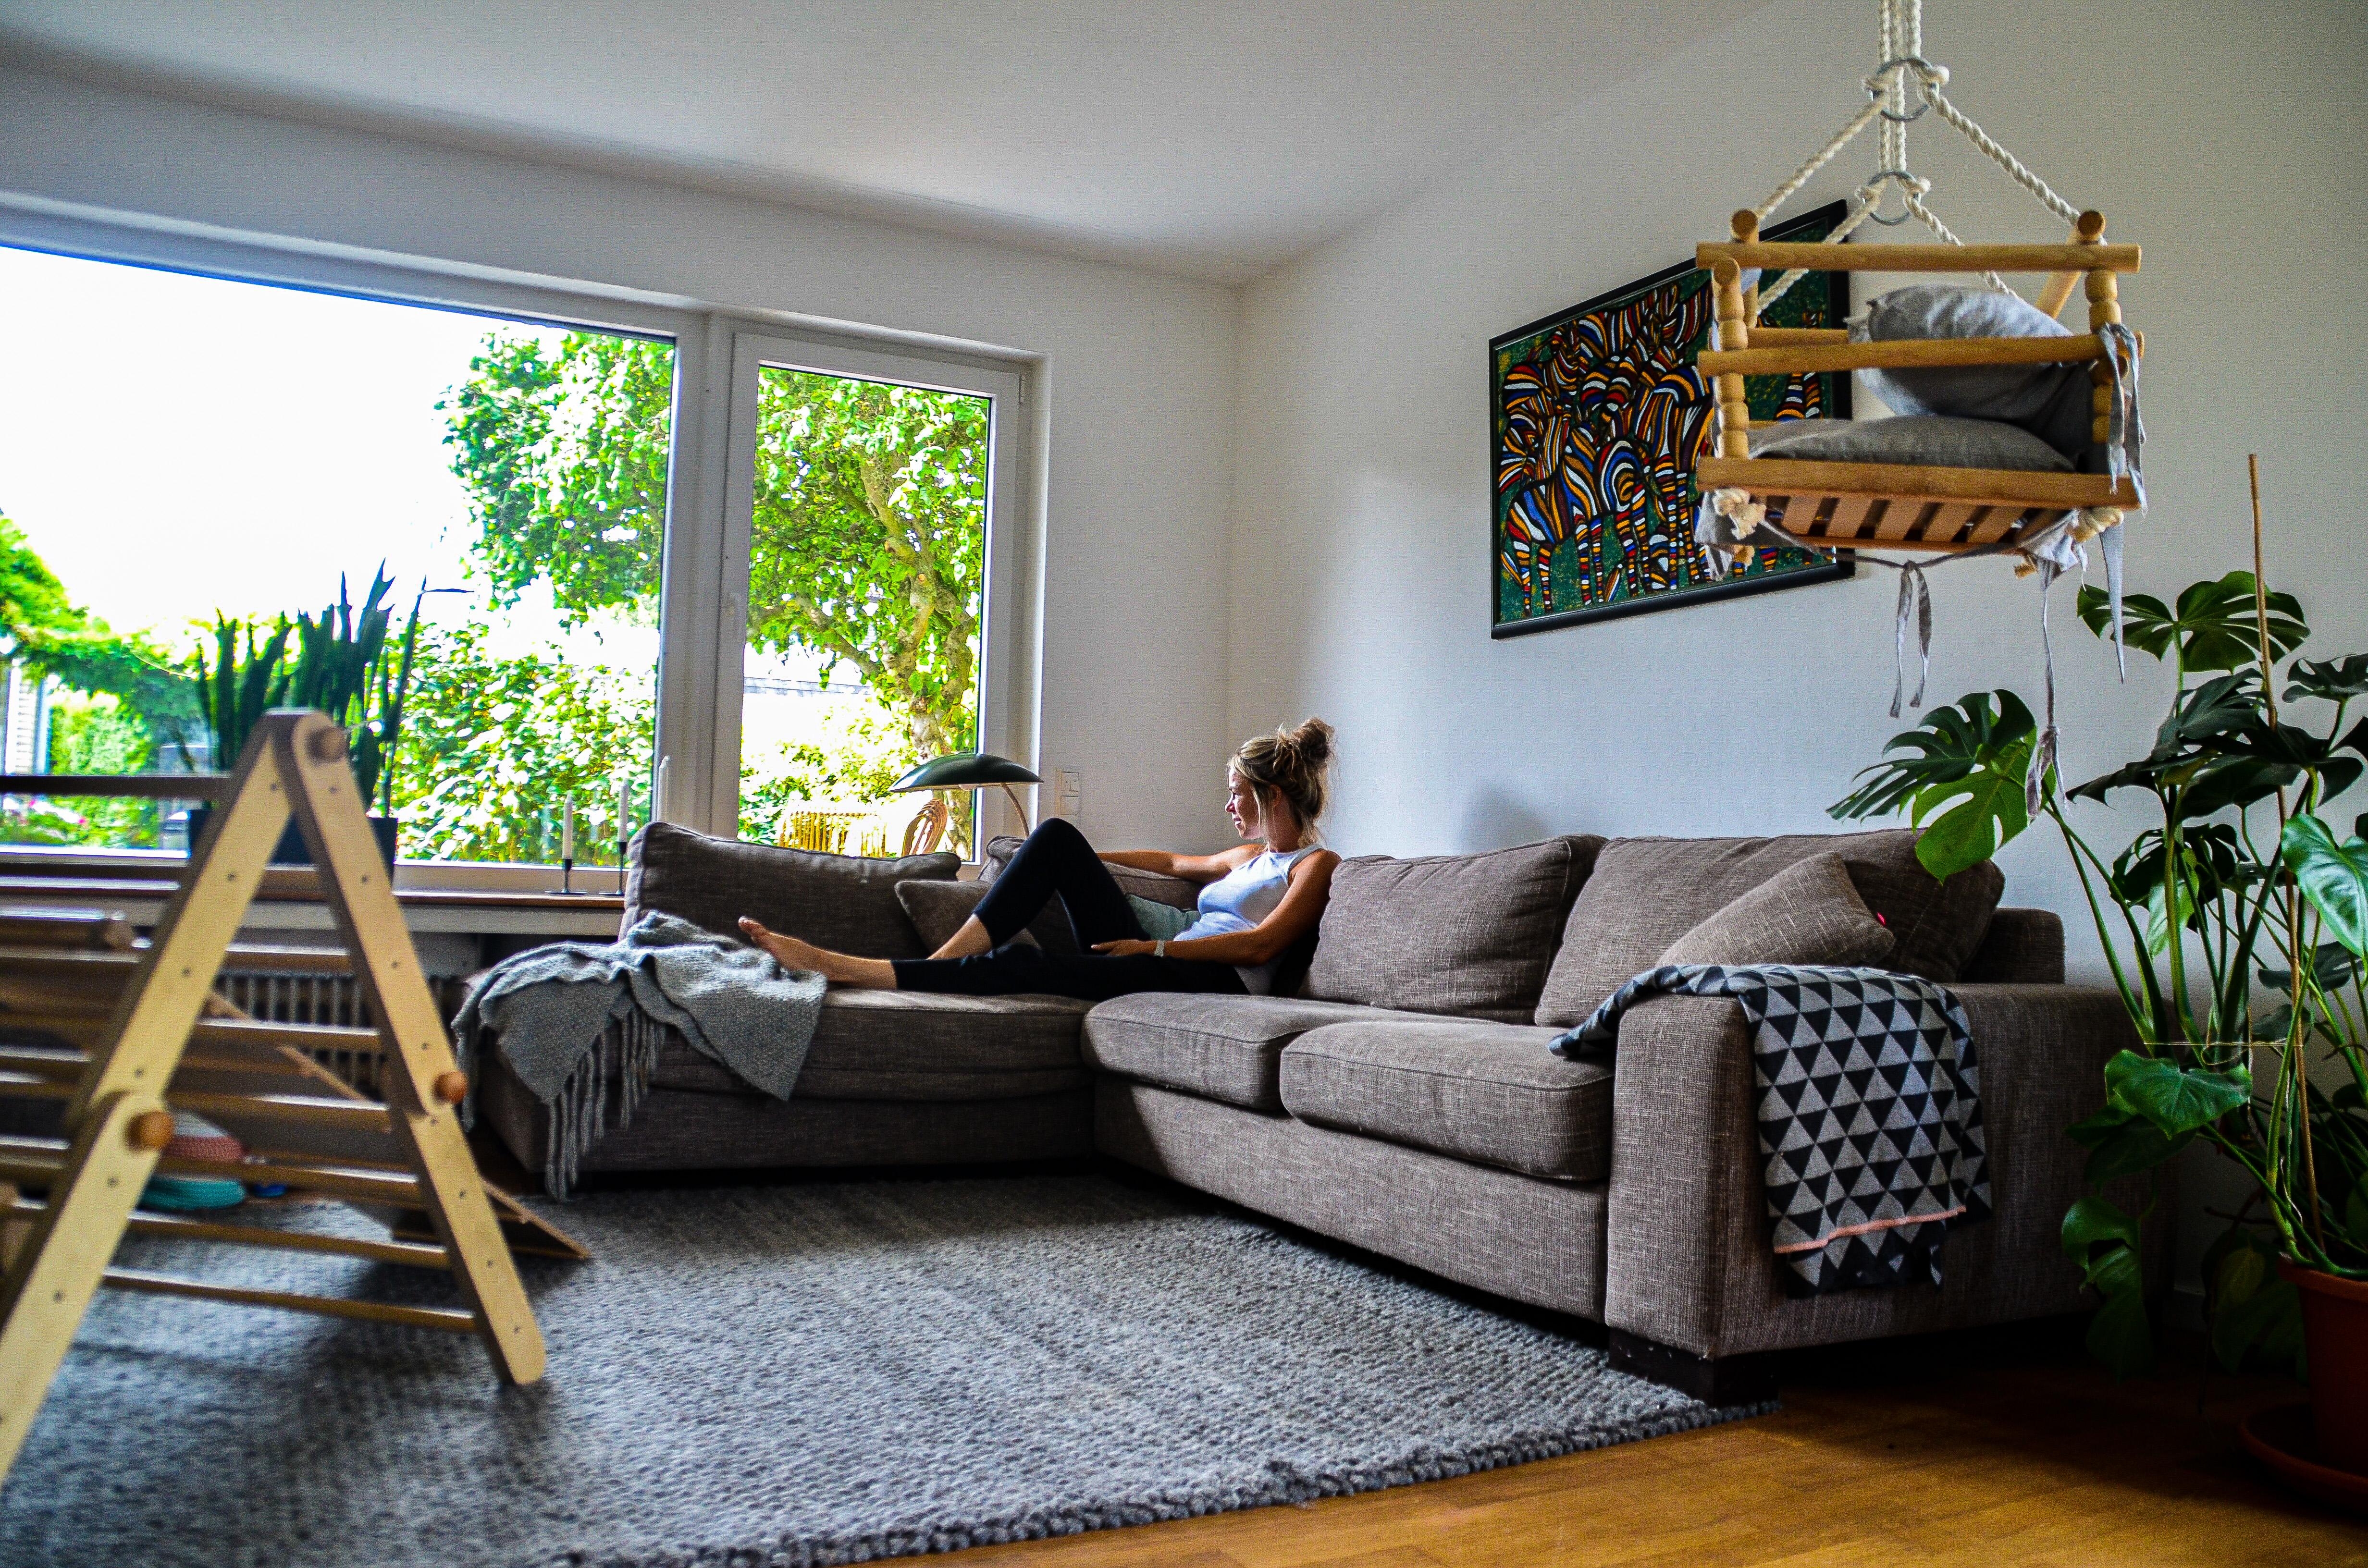 Couchstyle 🧡 #livingroom #wohnzimmer #couch #interior 